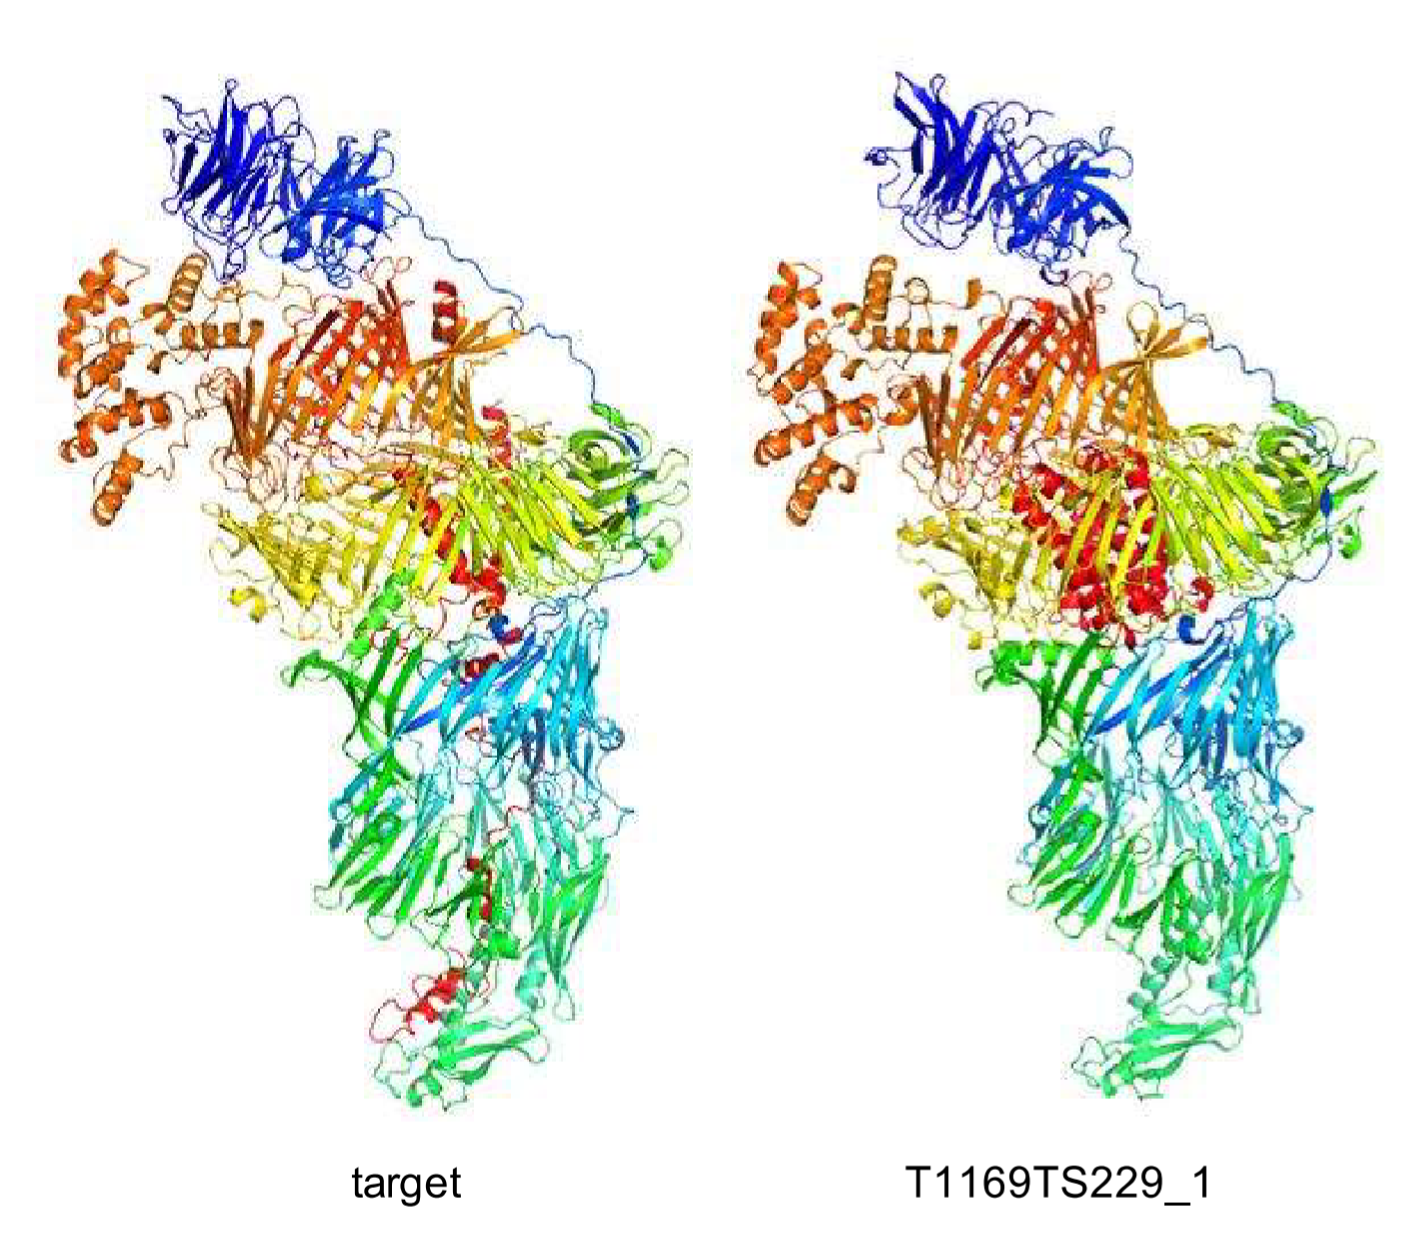 Elképesztően fejlett fehérjekutató algoritmusok versengenek egymással, hogy feltérképezzék a legalapvetőbb biológiai folyamatokat